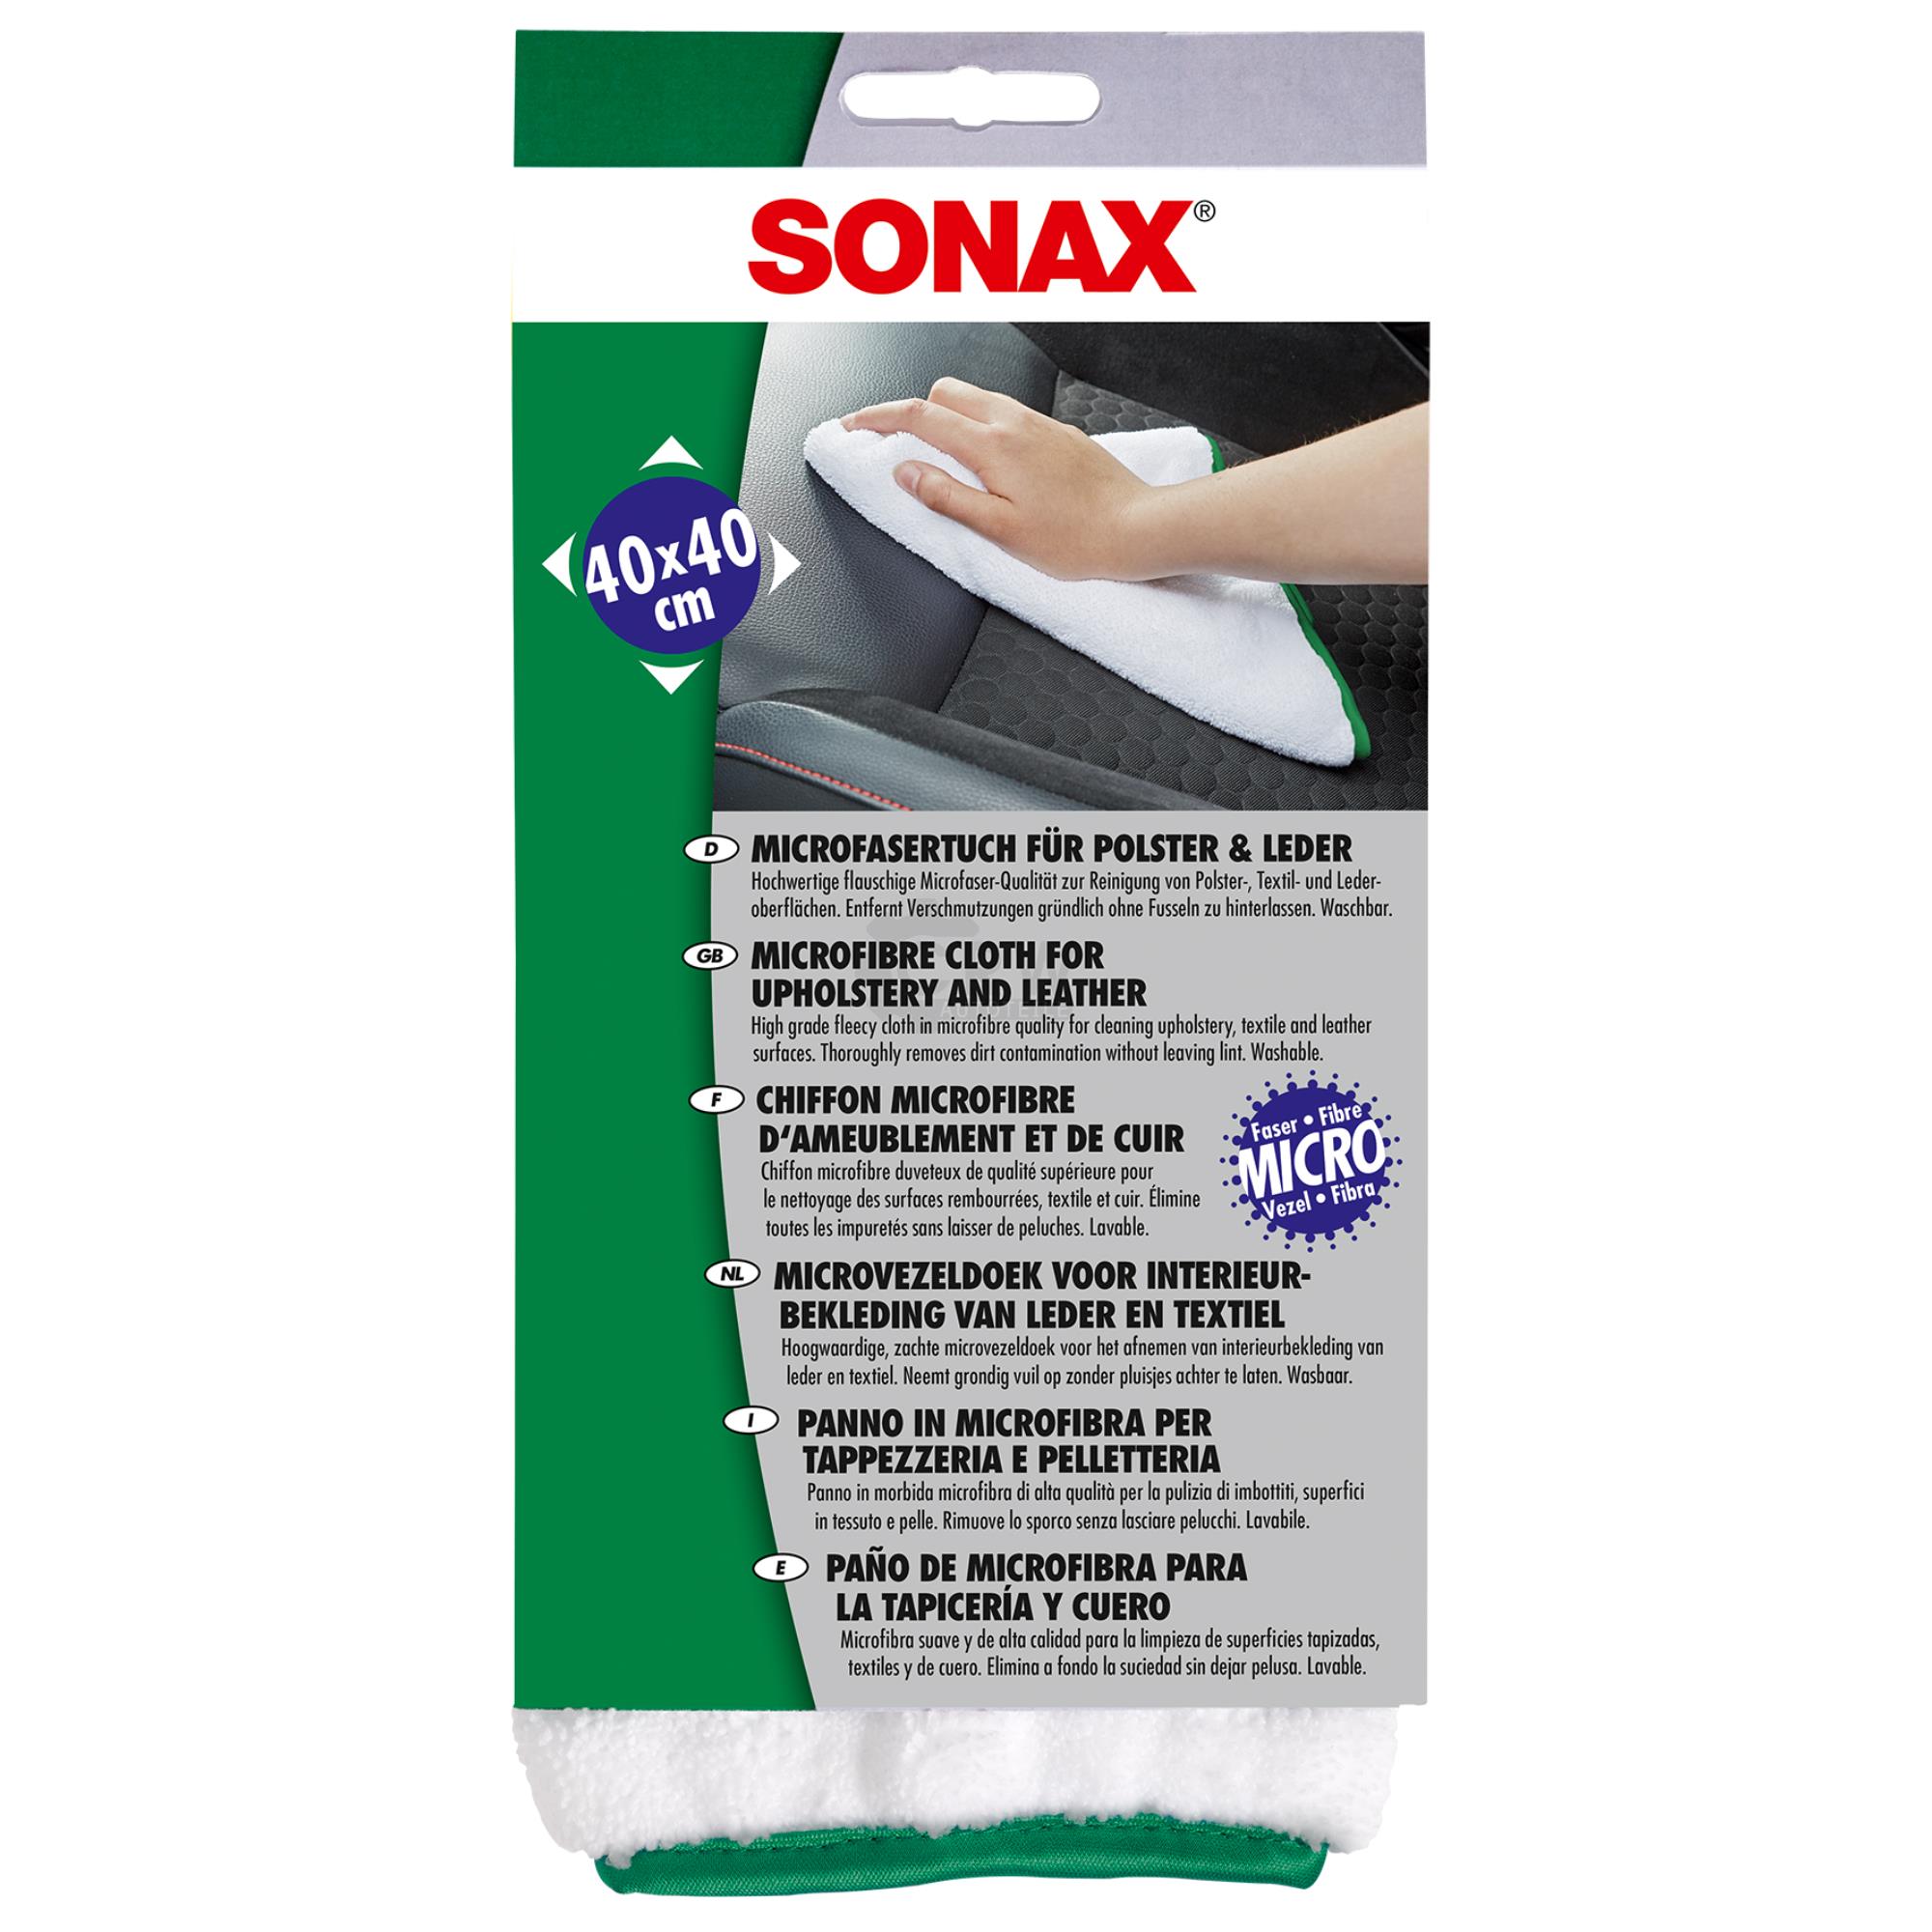 SONAX MicrofaserTuch für Polster & Leder Innenraum Pflege Tuch 83 g